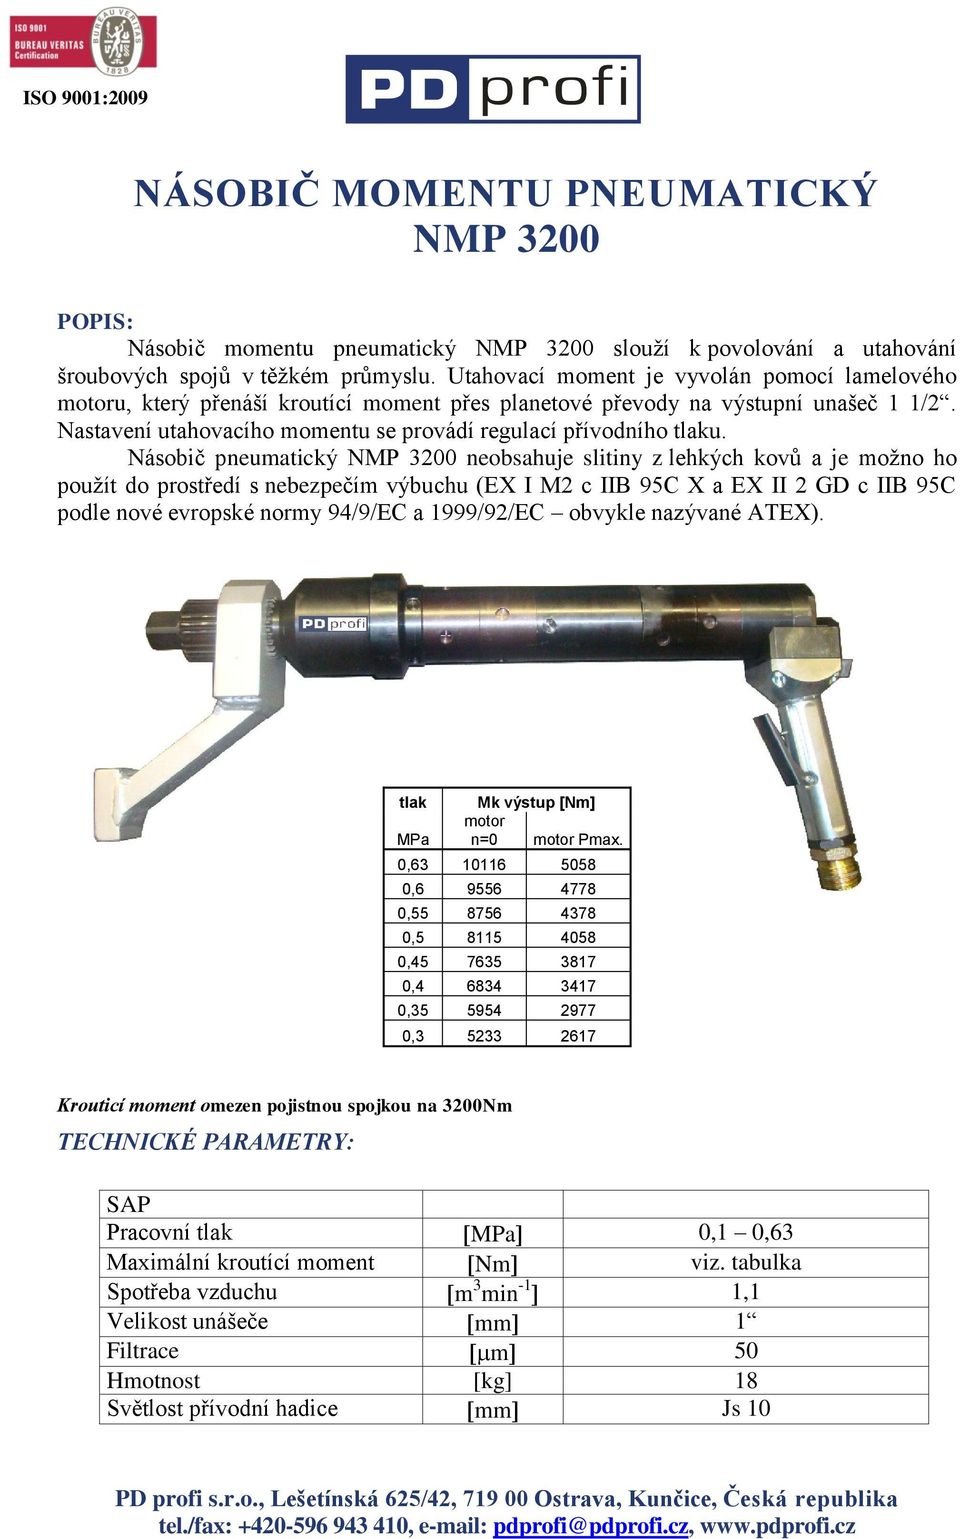 Násobič pneumatický NMP 3200 neobsahuje slitiny z lehkých kovů a je možno ho použít do prostředí s nebezpečím výbuchu (EX I M2 c IIB 95C X a EX II 2 GD c IIB 95C podle nové evropské normy 94/9/EC a